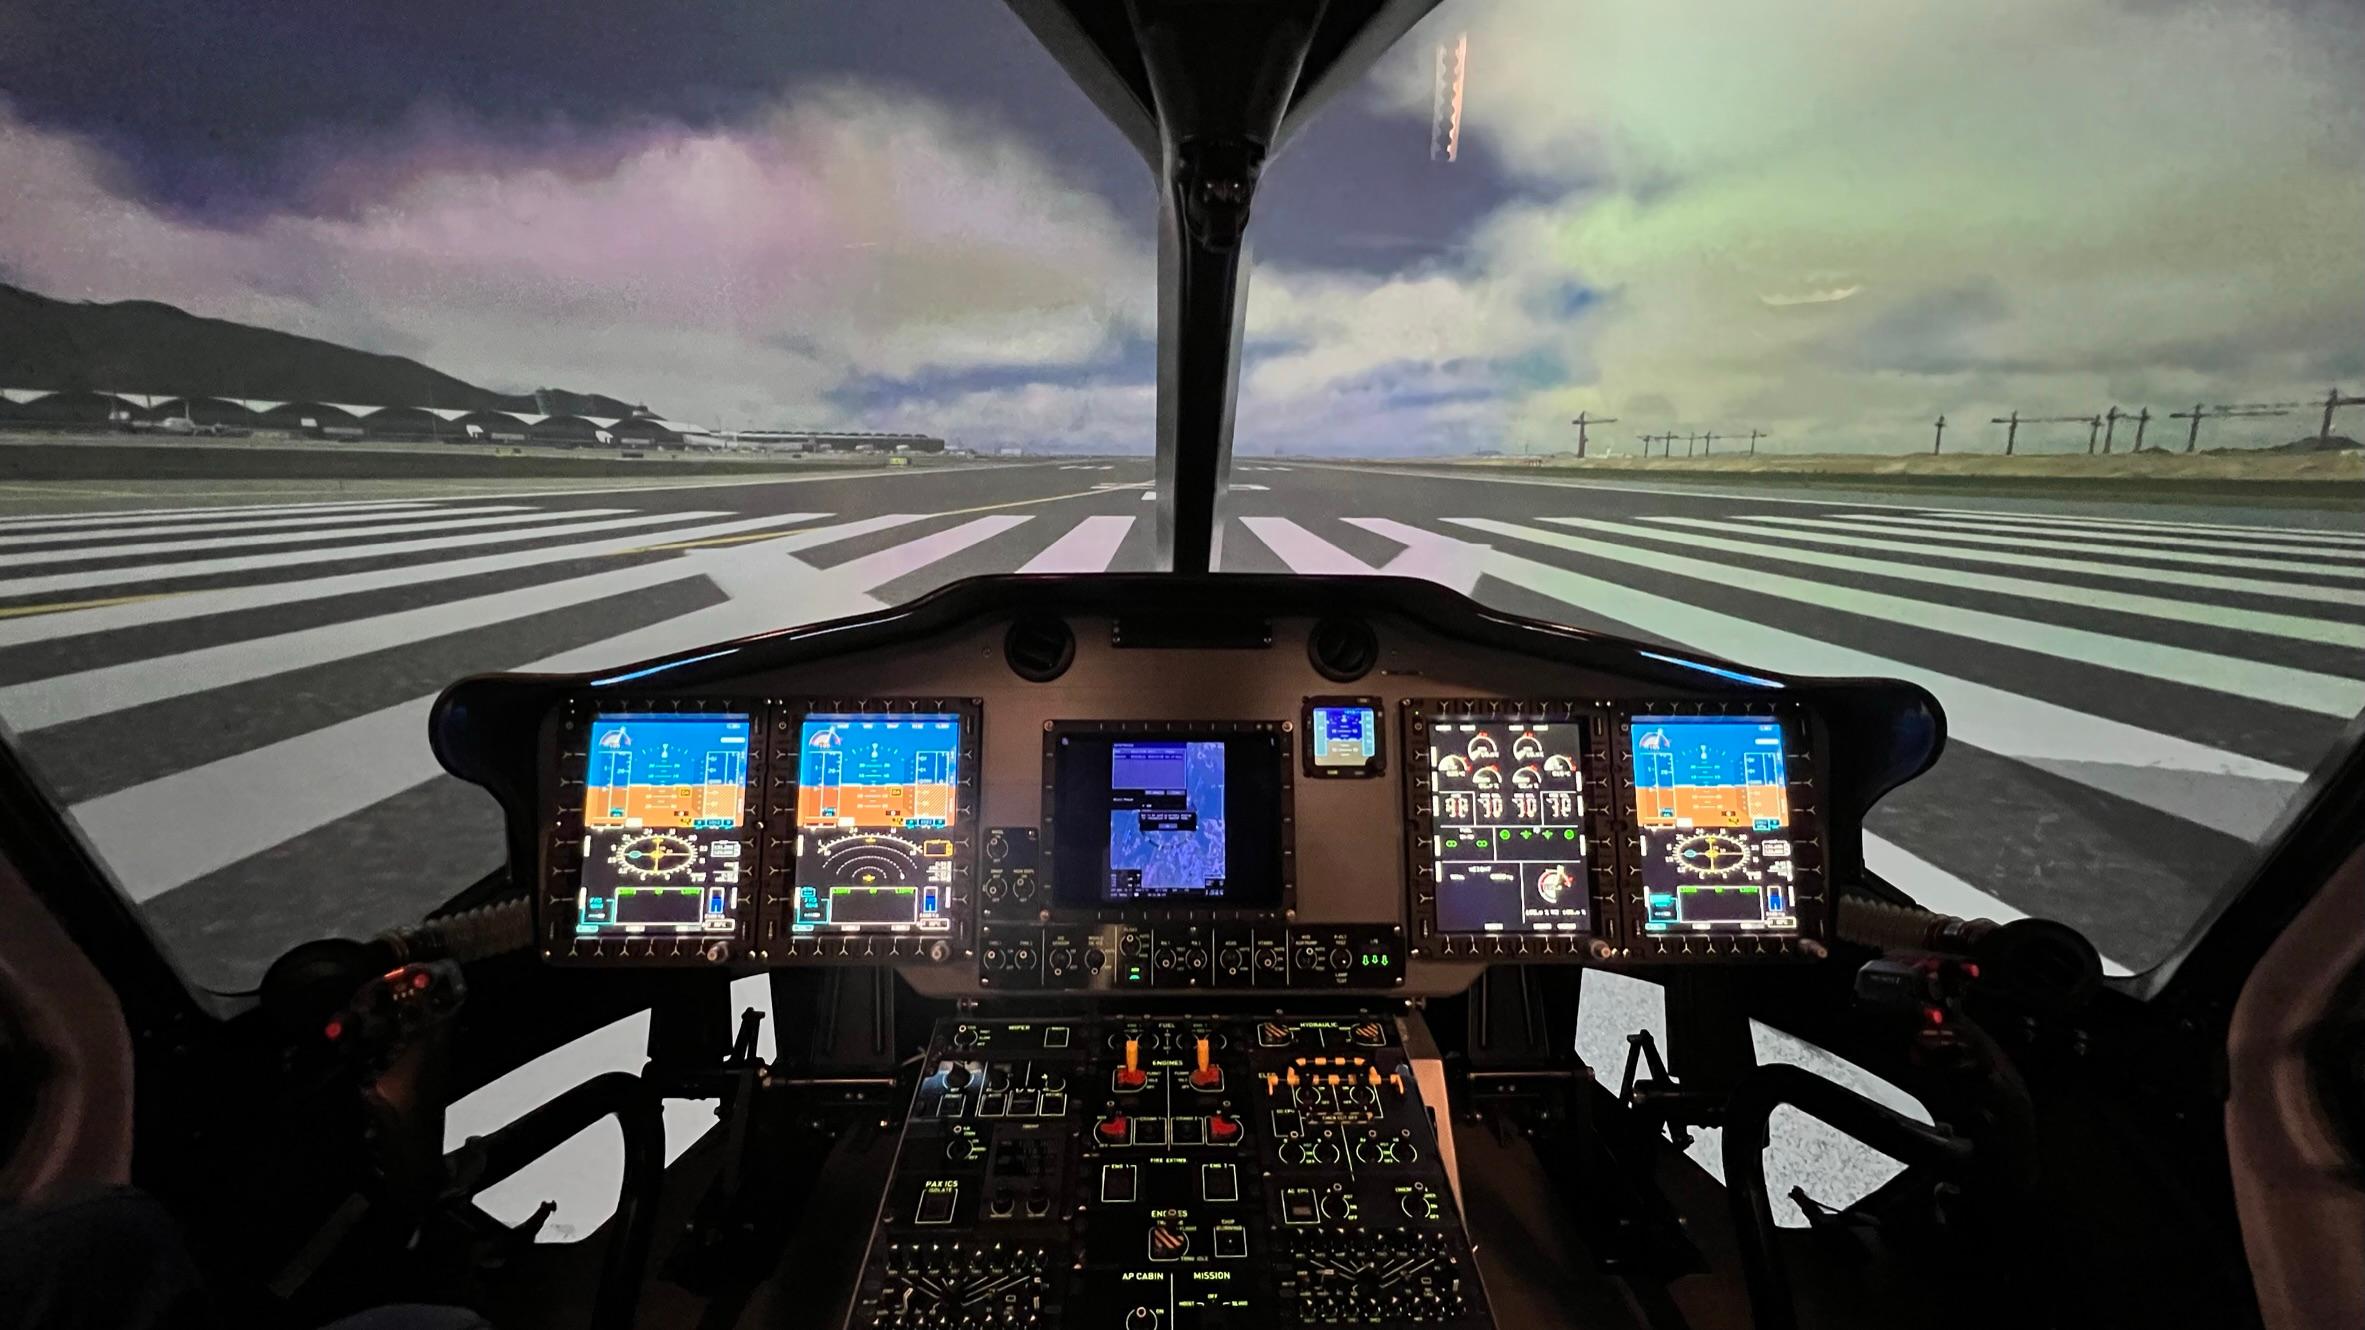 政府飛行服務隊今日（六月十六日）公布引進了一部先進的H175模擬飛行訓練器，為政府飛行服務隊的機師提供真實和身臨其境的飛行訓練，以提升機師應對嚴峻的搜索及救援任務的能力。H175模擬飛行訓練器能夠模擬各種飛行場景和環境，及具有高解像度的香港地理資訊和視像數據庫，使機師能夠在高像真度的環境下進行任務訓練。